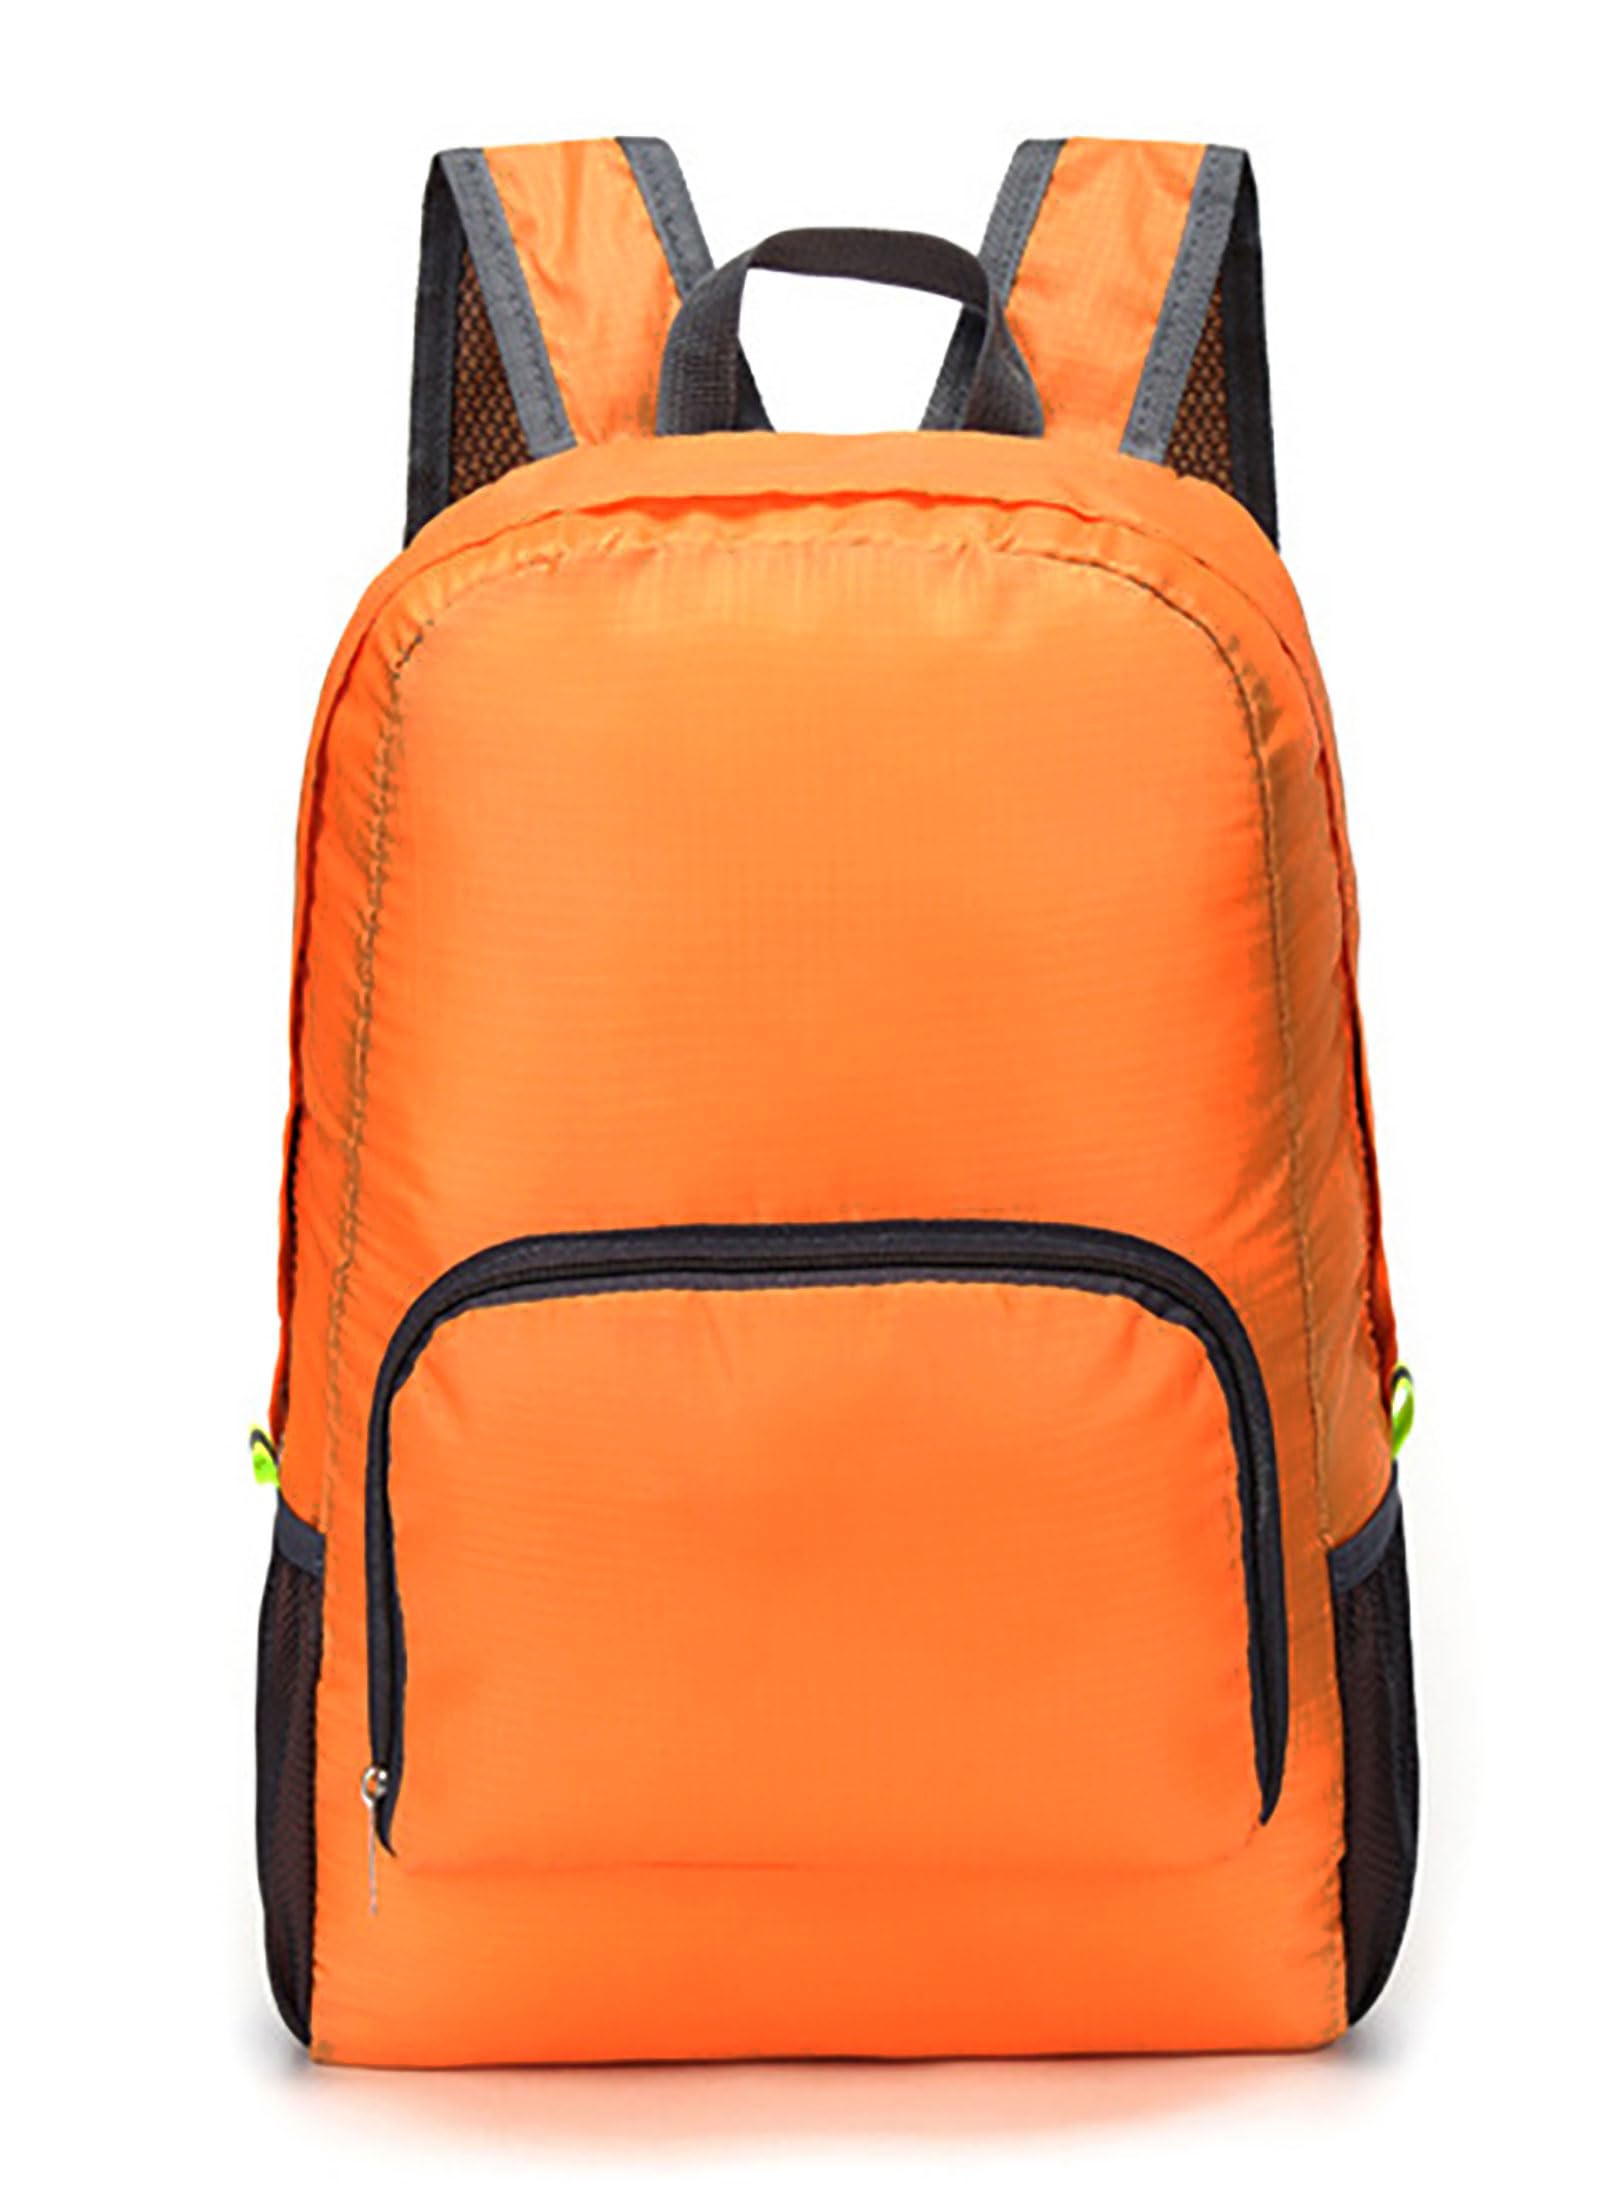 YJHKMR Lightweight Foldable Backpack Handy Packable Travel Hiking Daypack Waterproof Shoulder Bag for Women Men